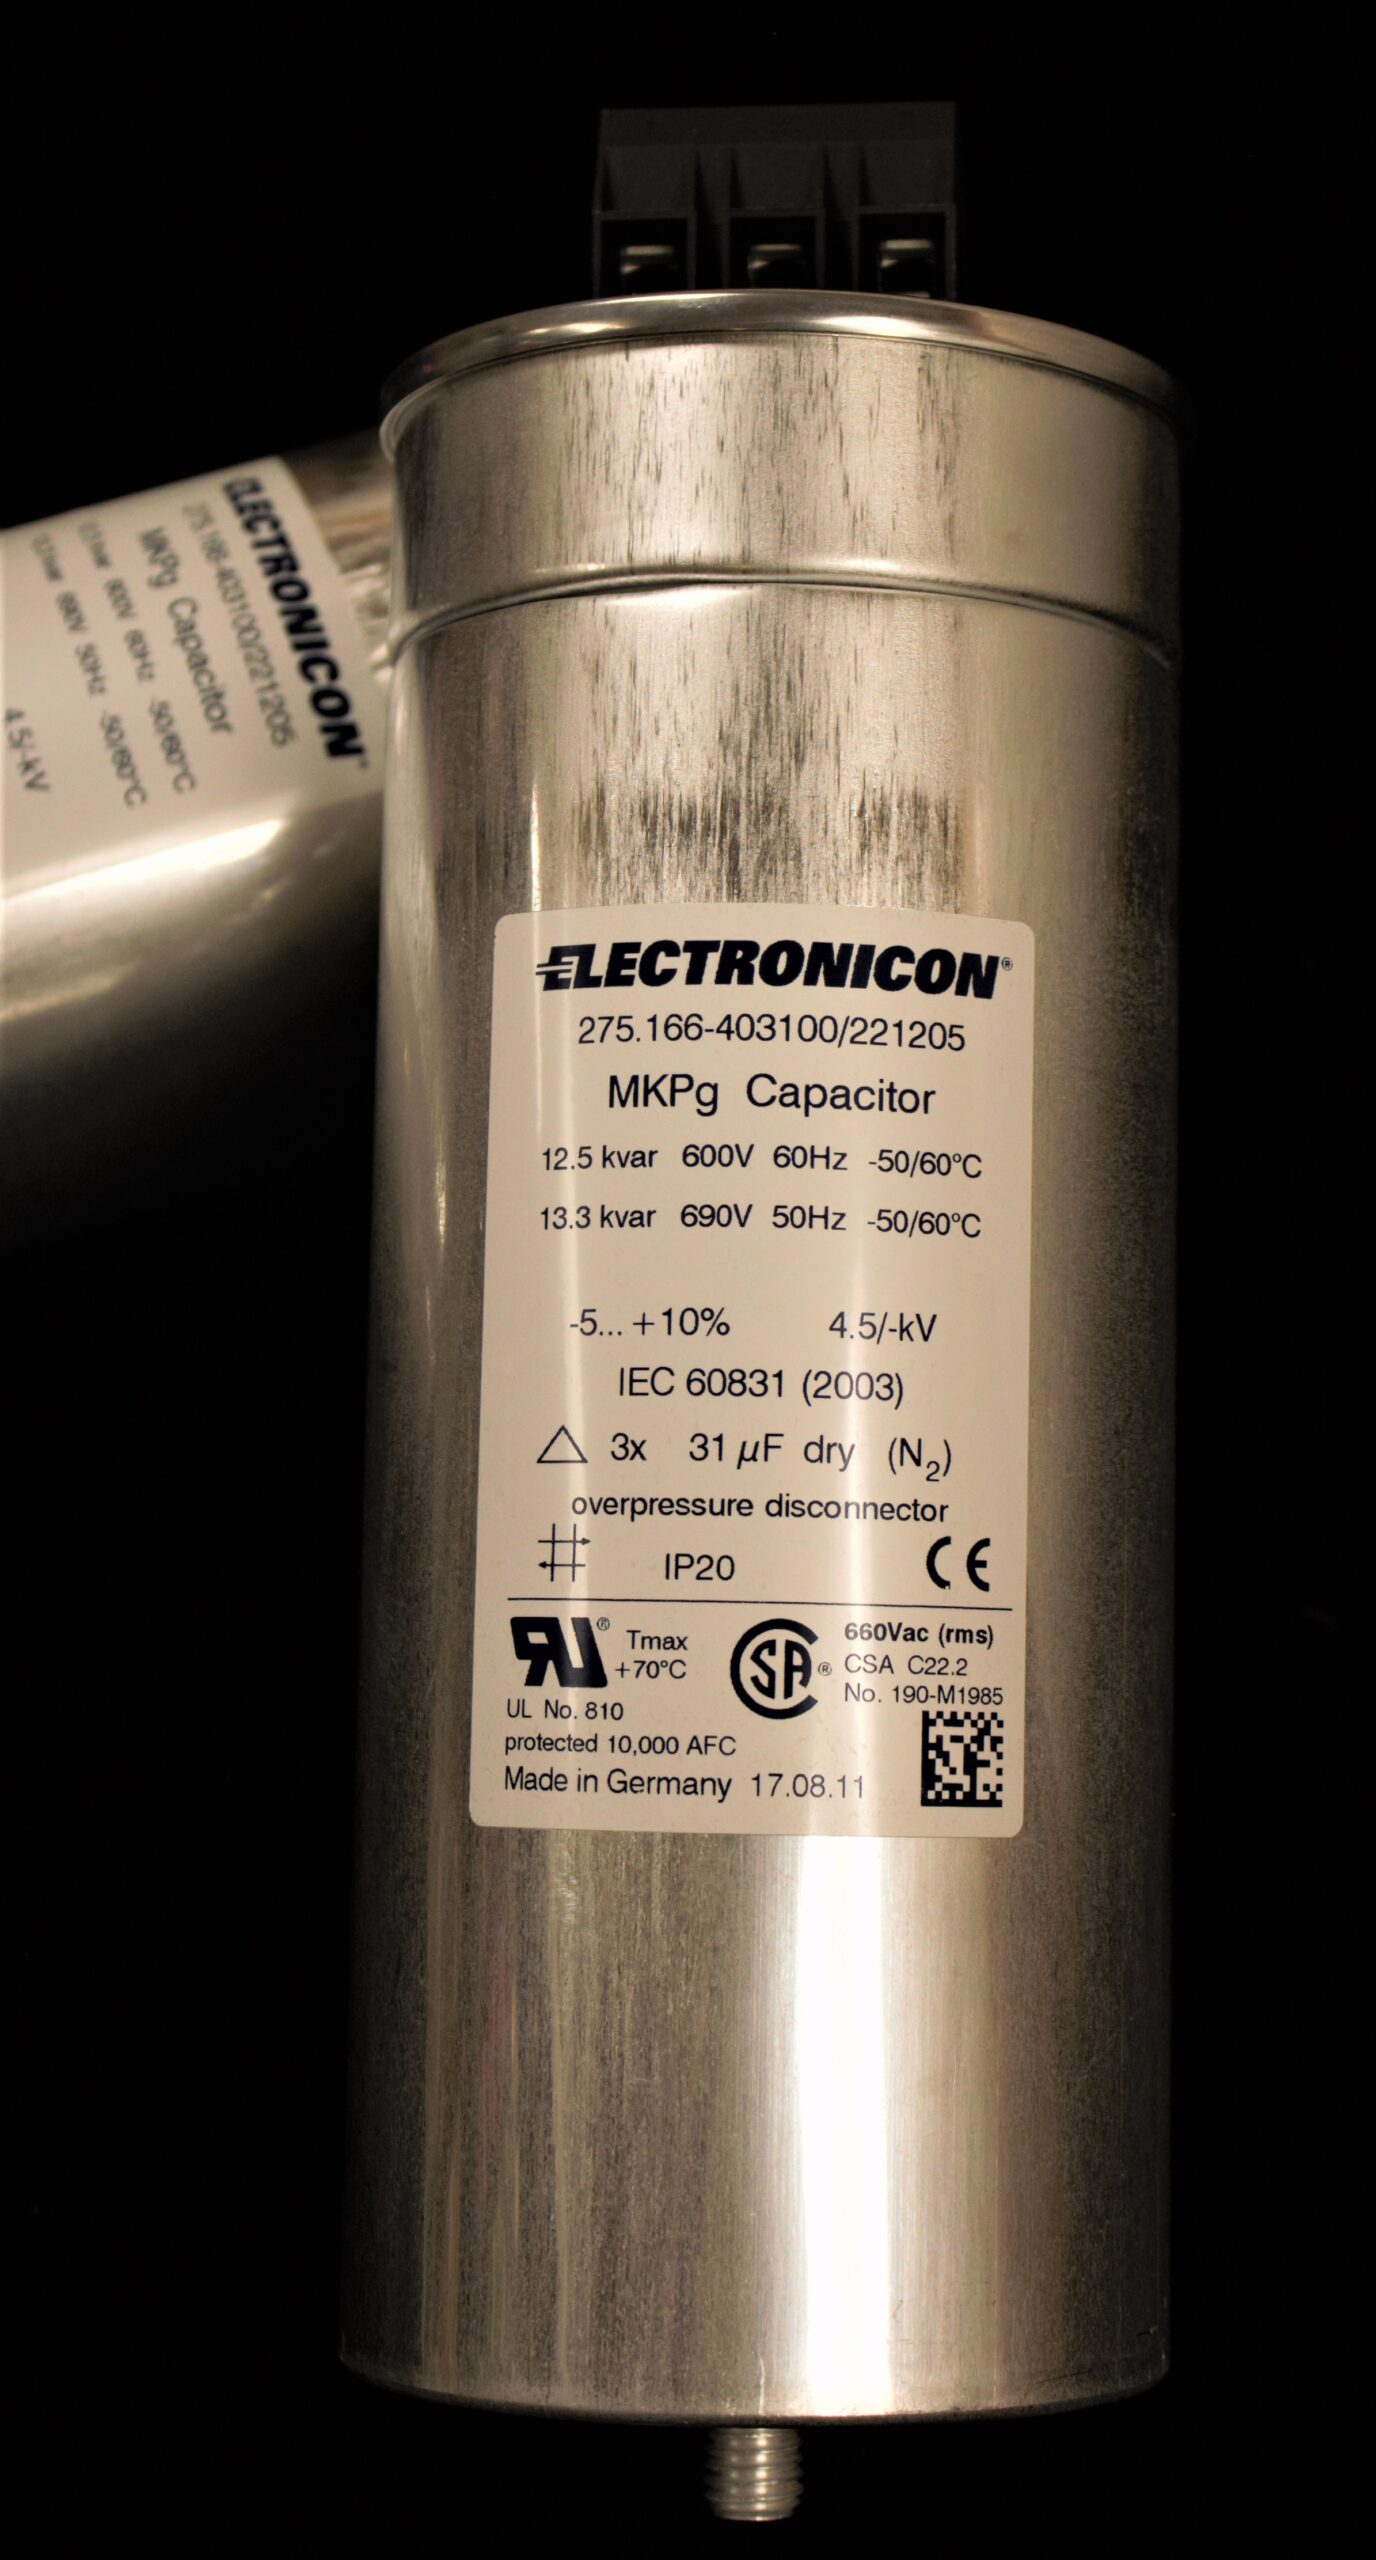 Electronicon 275.166-403100 Power Factor Correction Capacitor 12.5 kvar  600v 60Hz